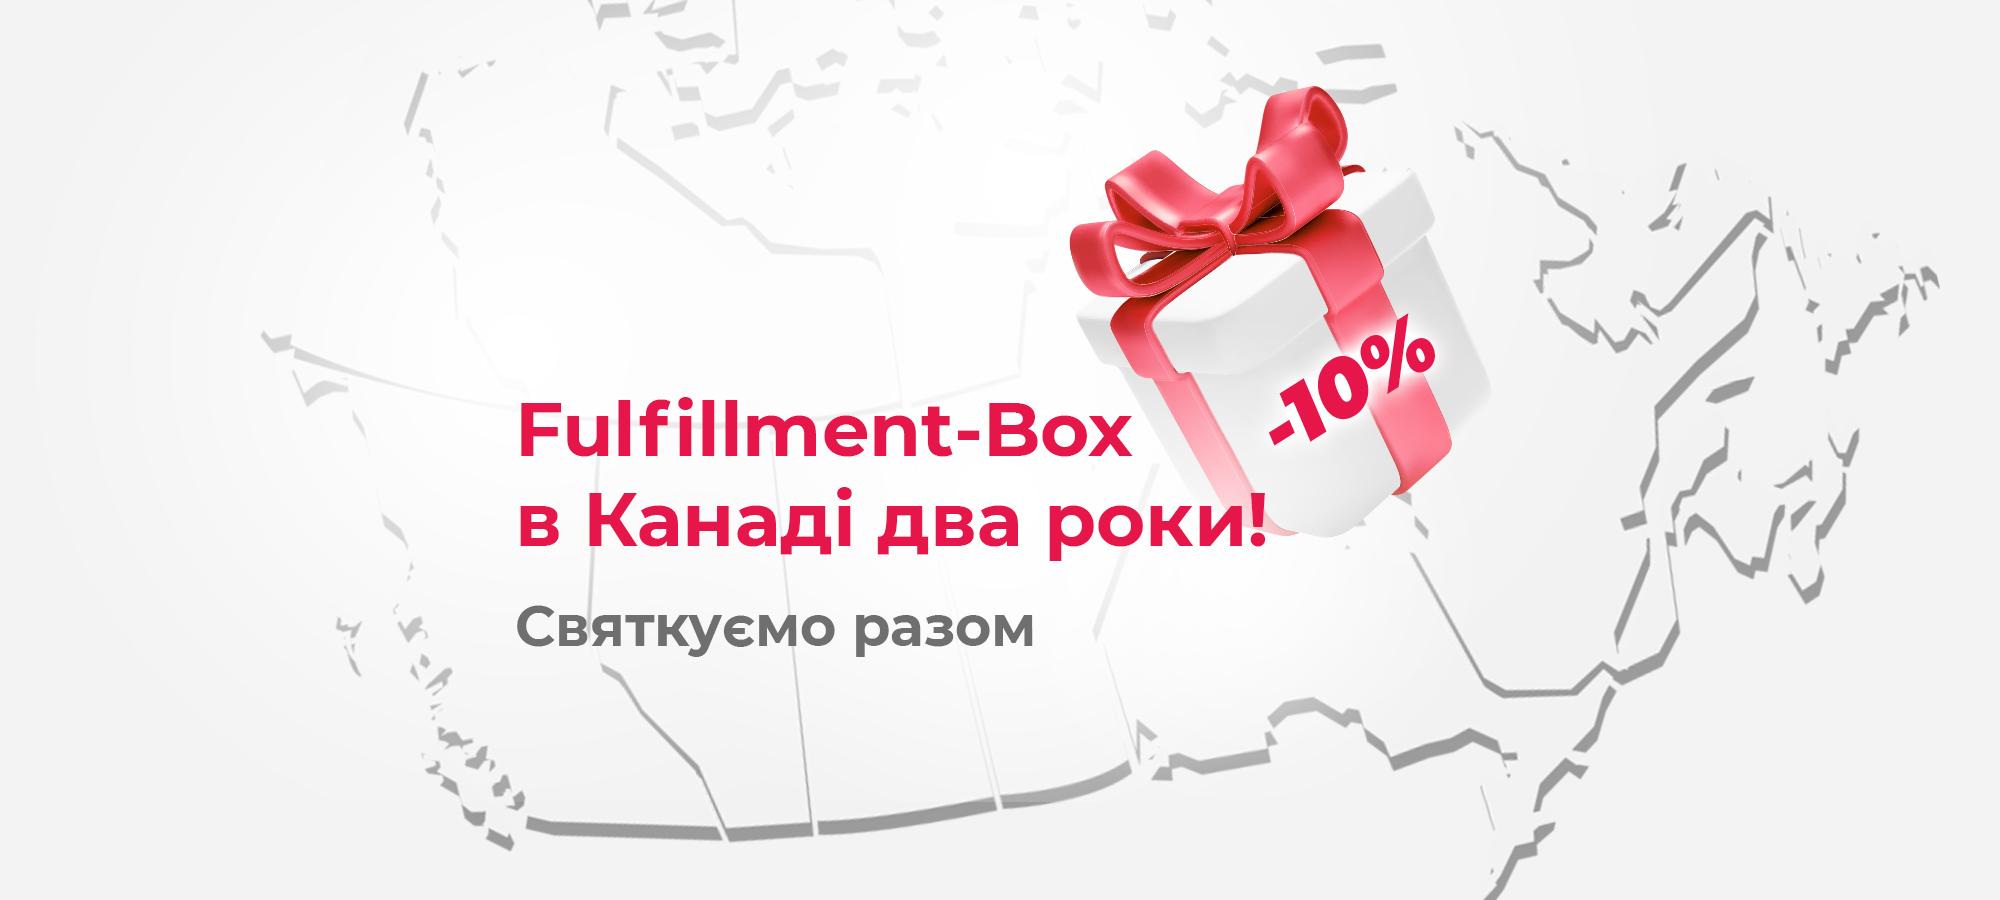 Fulfillment-Box у Канаді святкує два роки роботи. Знижка 10% для нових клієнтів